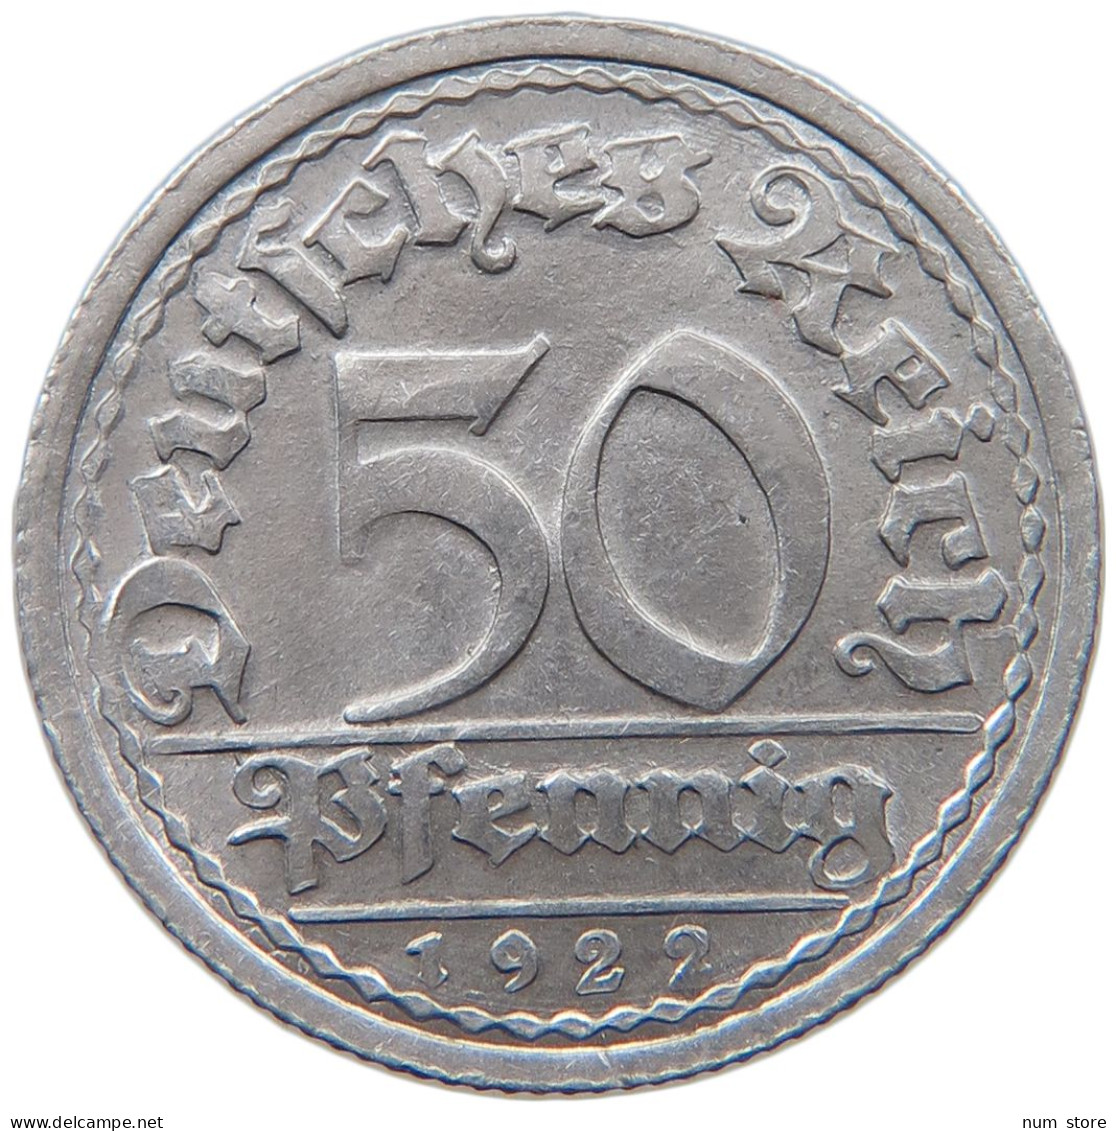 WEIMARER REPUBLIK 50 PFENNIG 1922 G  #MA 098839 - 50 Rentenpfennig & 50 Reichspfennig